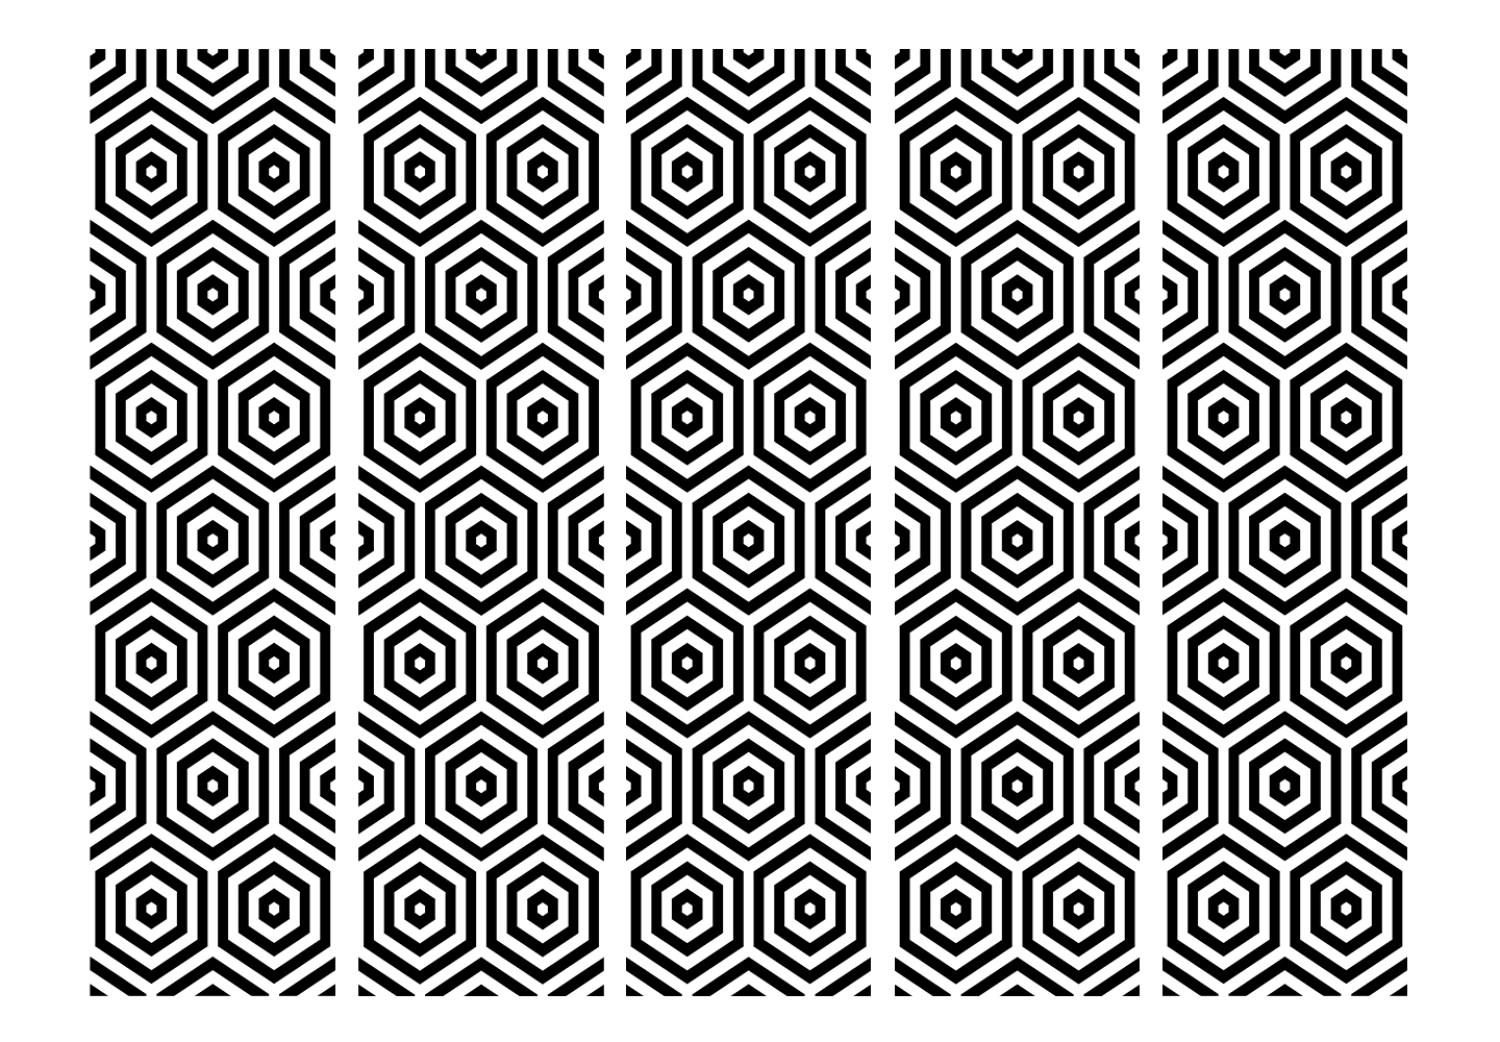 Biombo Hipnótico en blanco y negro II (5 partes) - patrones geométricos